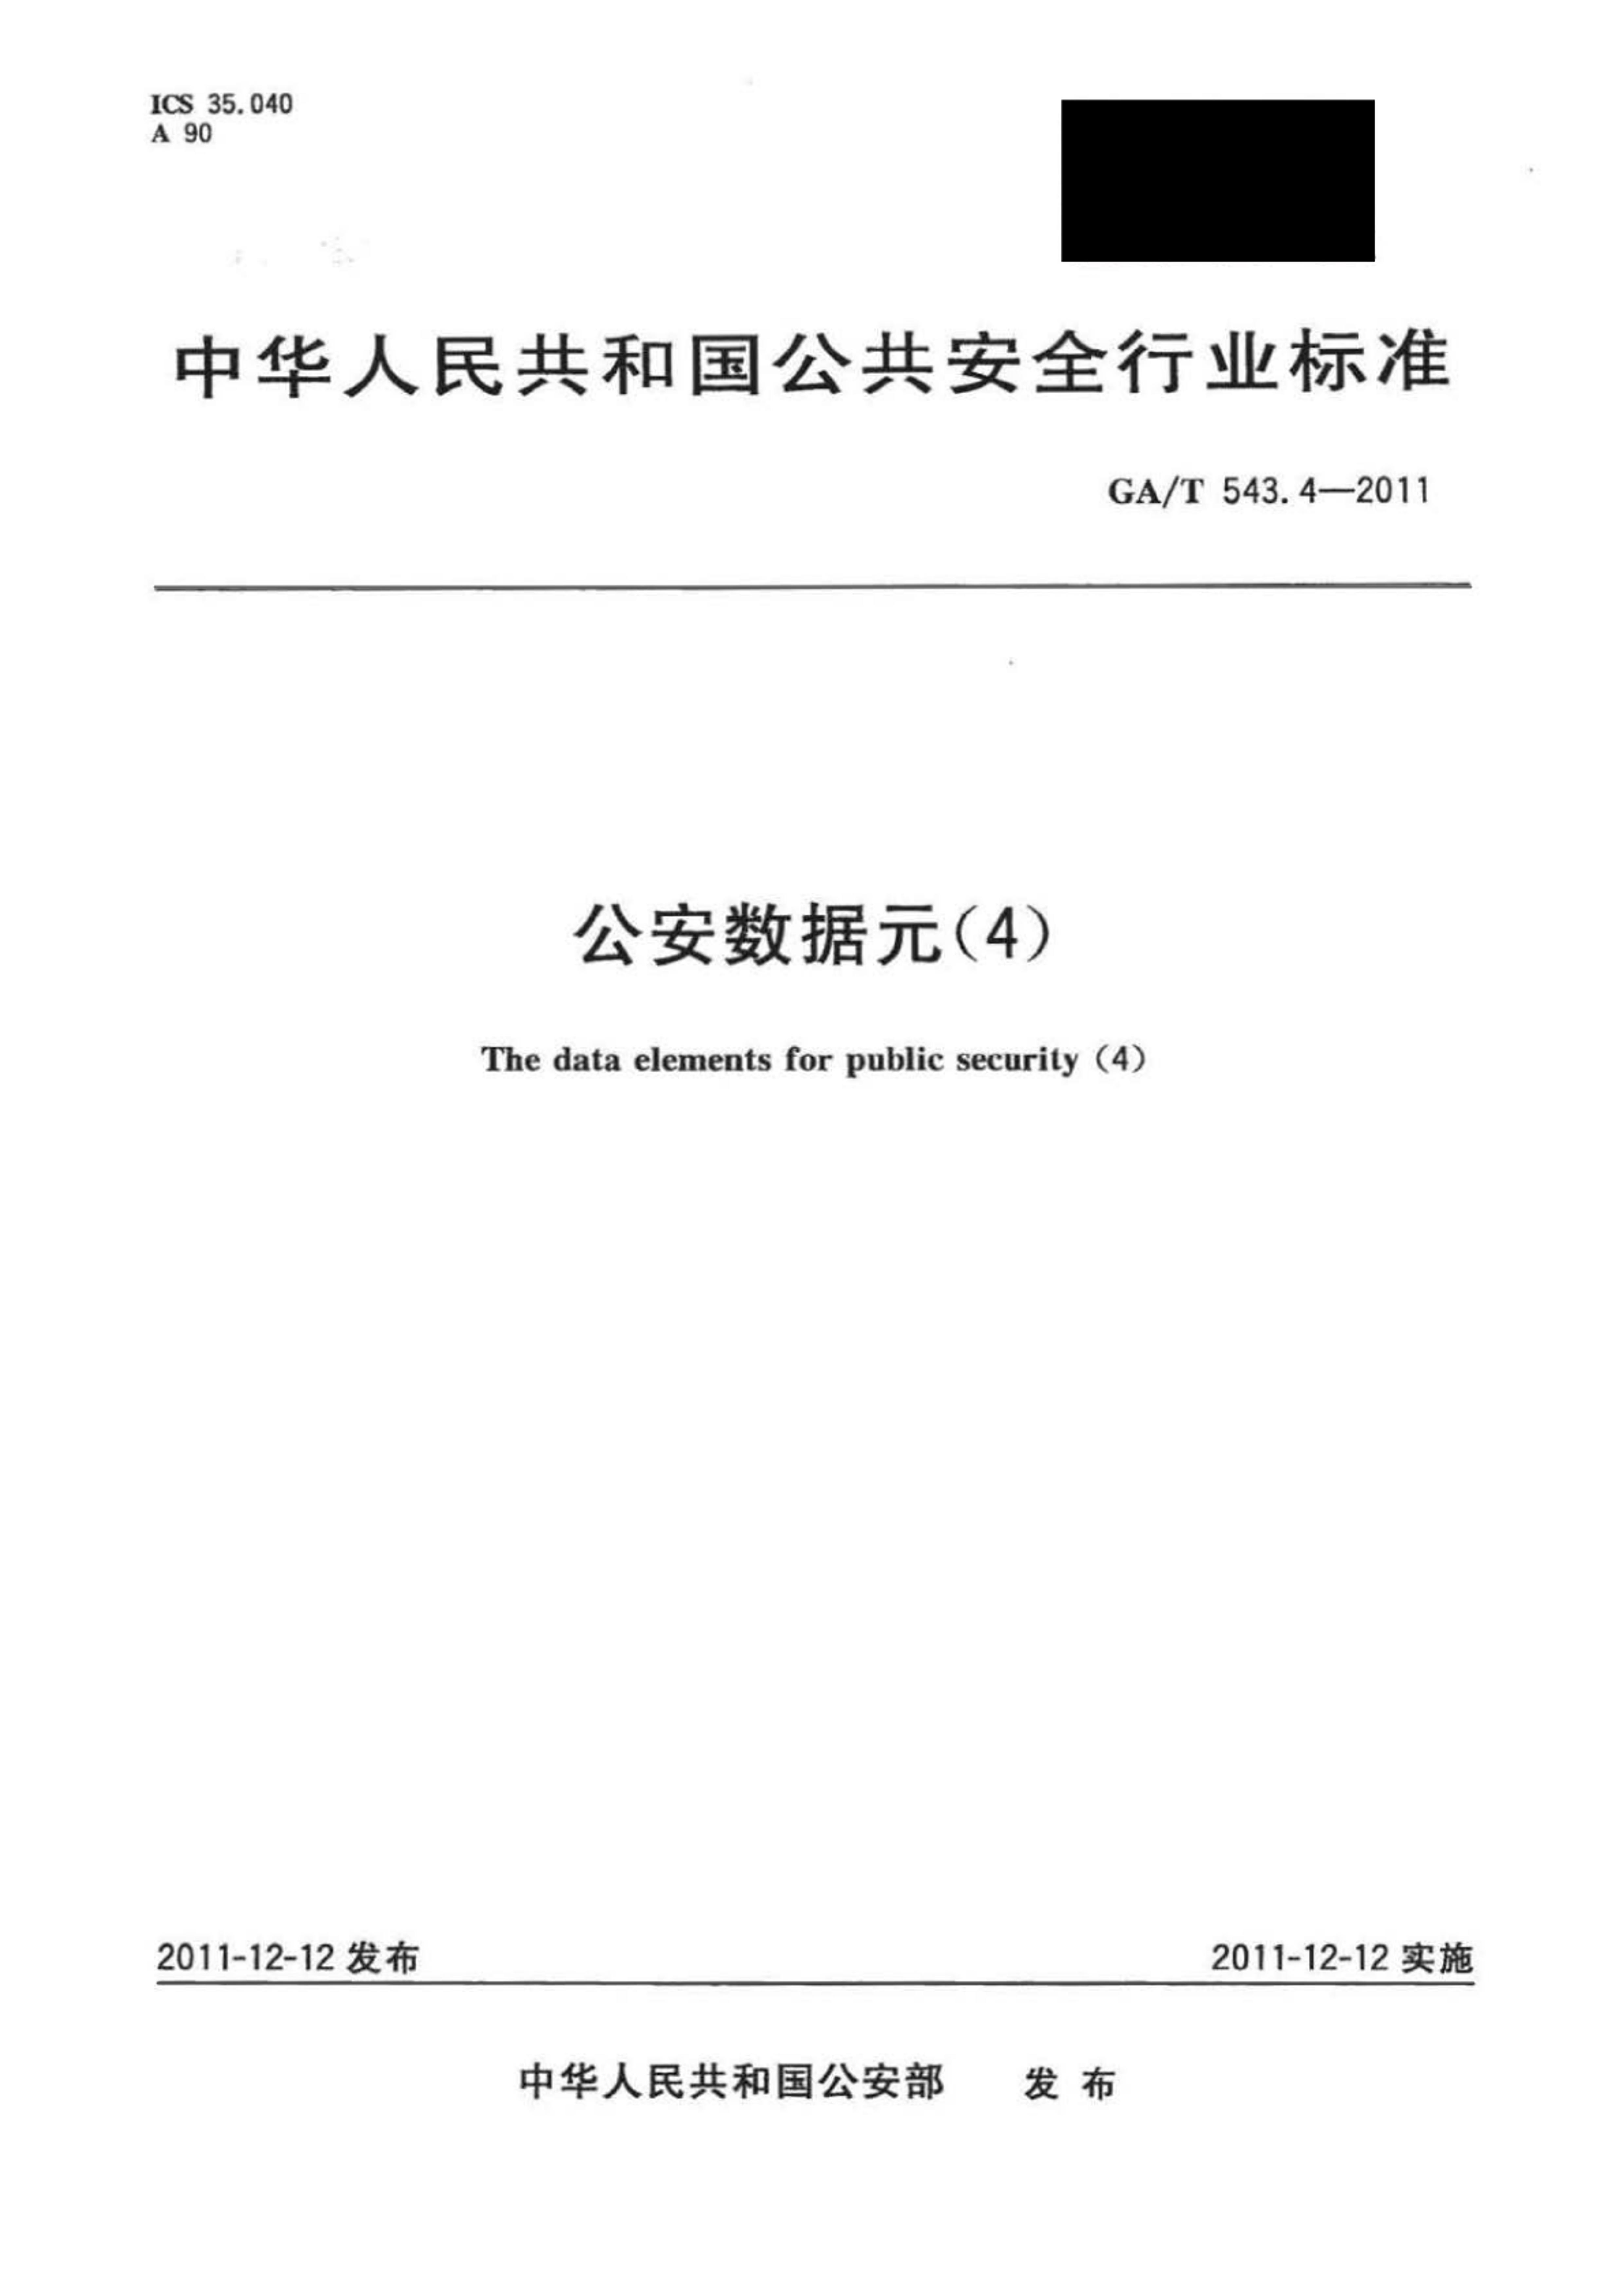 GAT 543.4-2011 Ԫ(4).pdf1ҳ